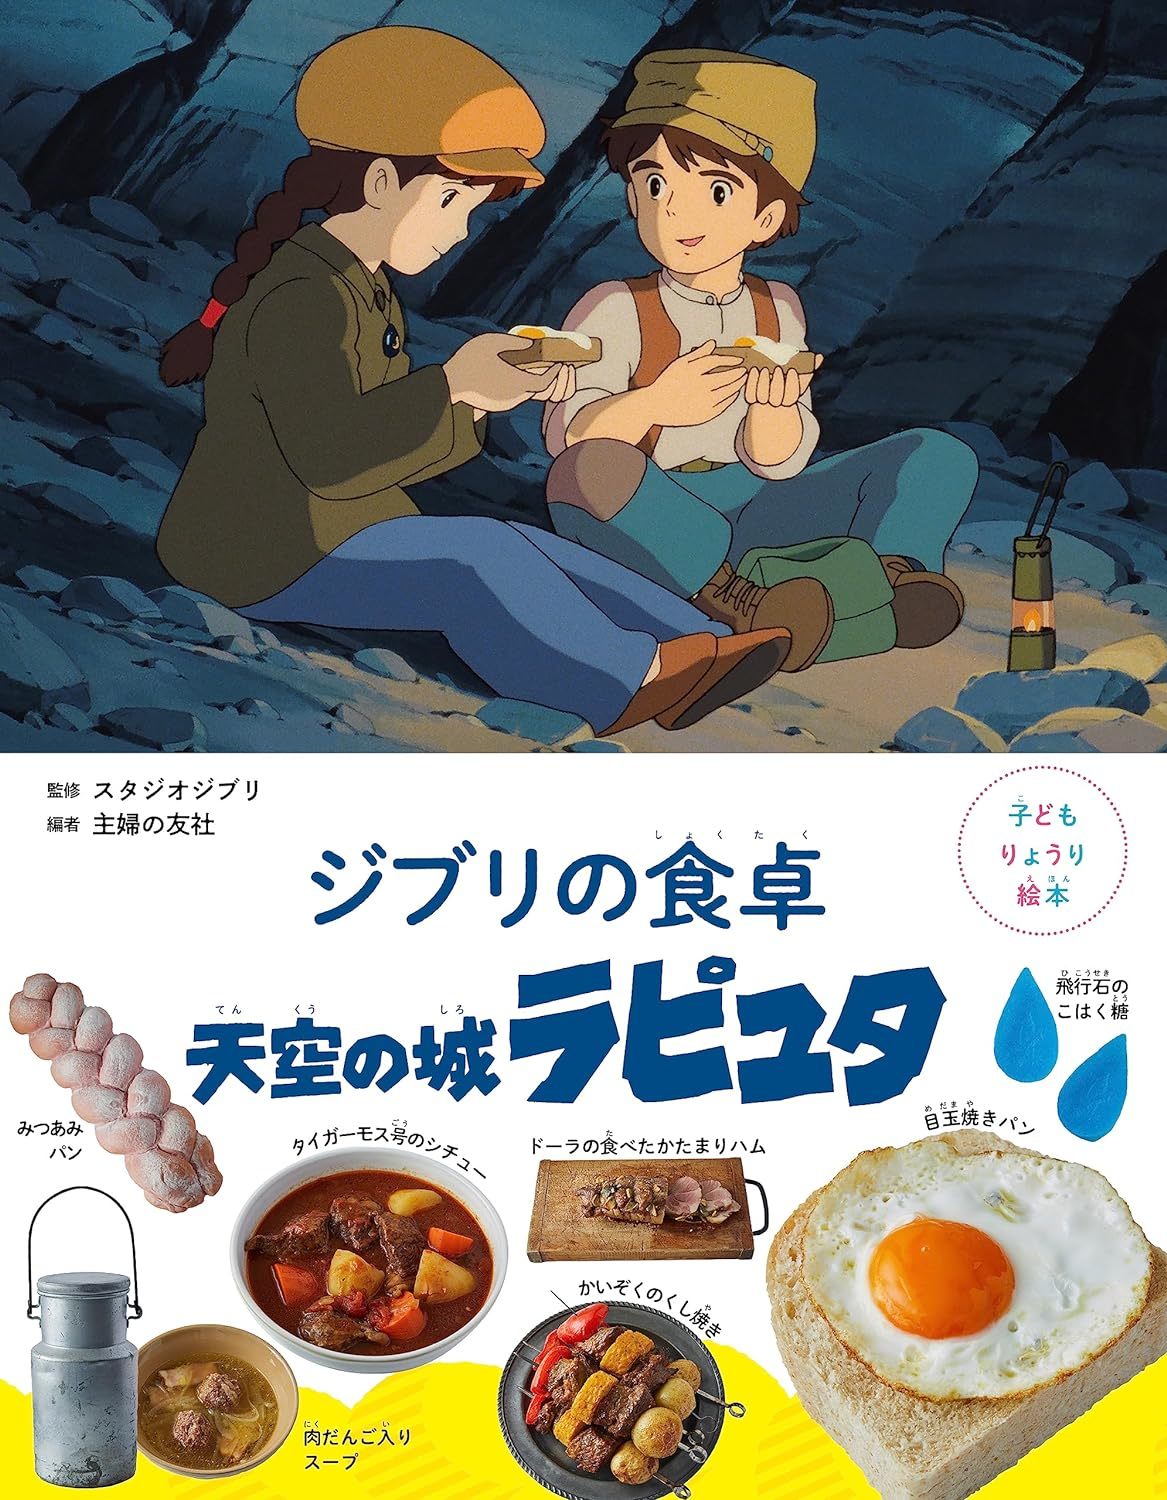 스튜디오 지브리의 만화영화 ‘천공의 성 라퓨타’에 등장하는 음식의 레시피를 소개한 ‘지브리의 식탁’ 요리 그림책. 일본 아마존 홈페이지 캡처